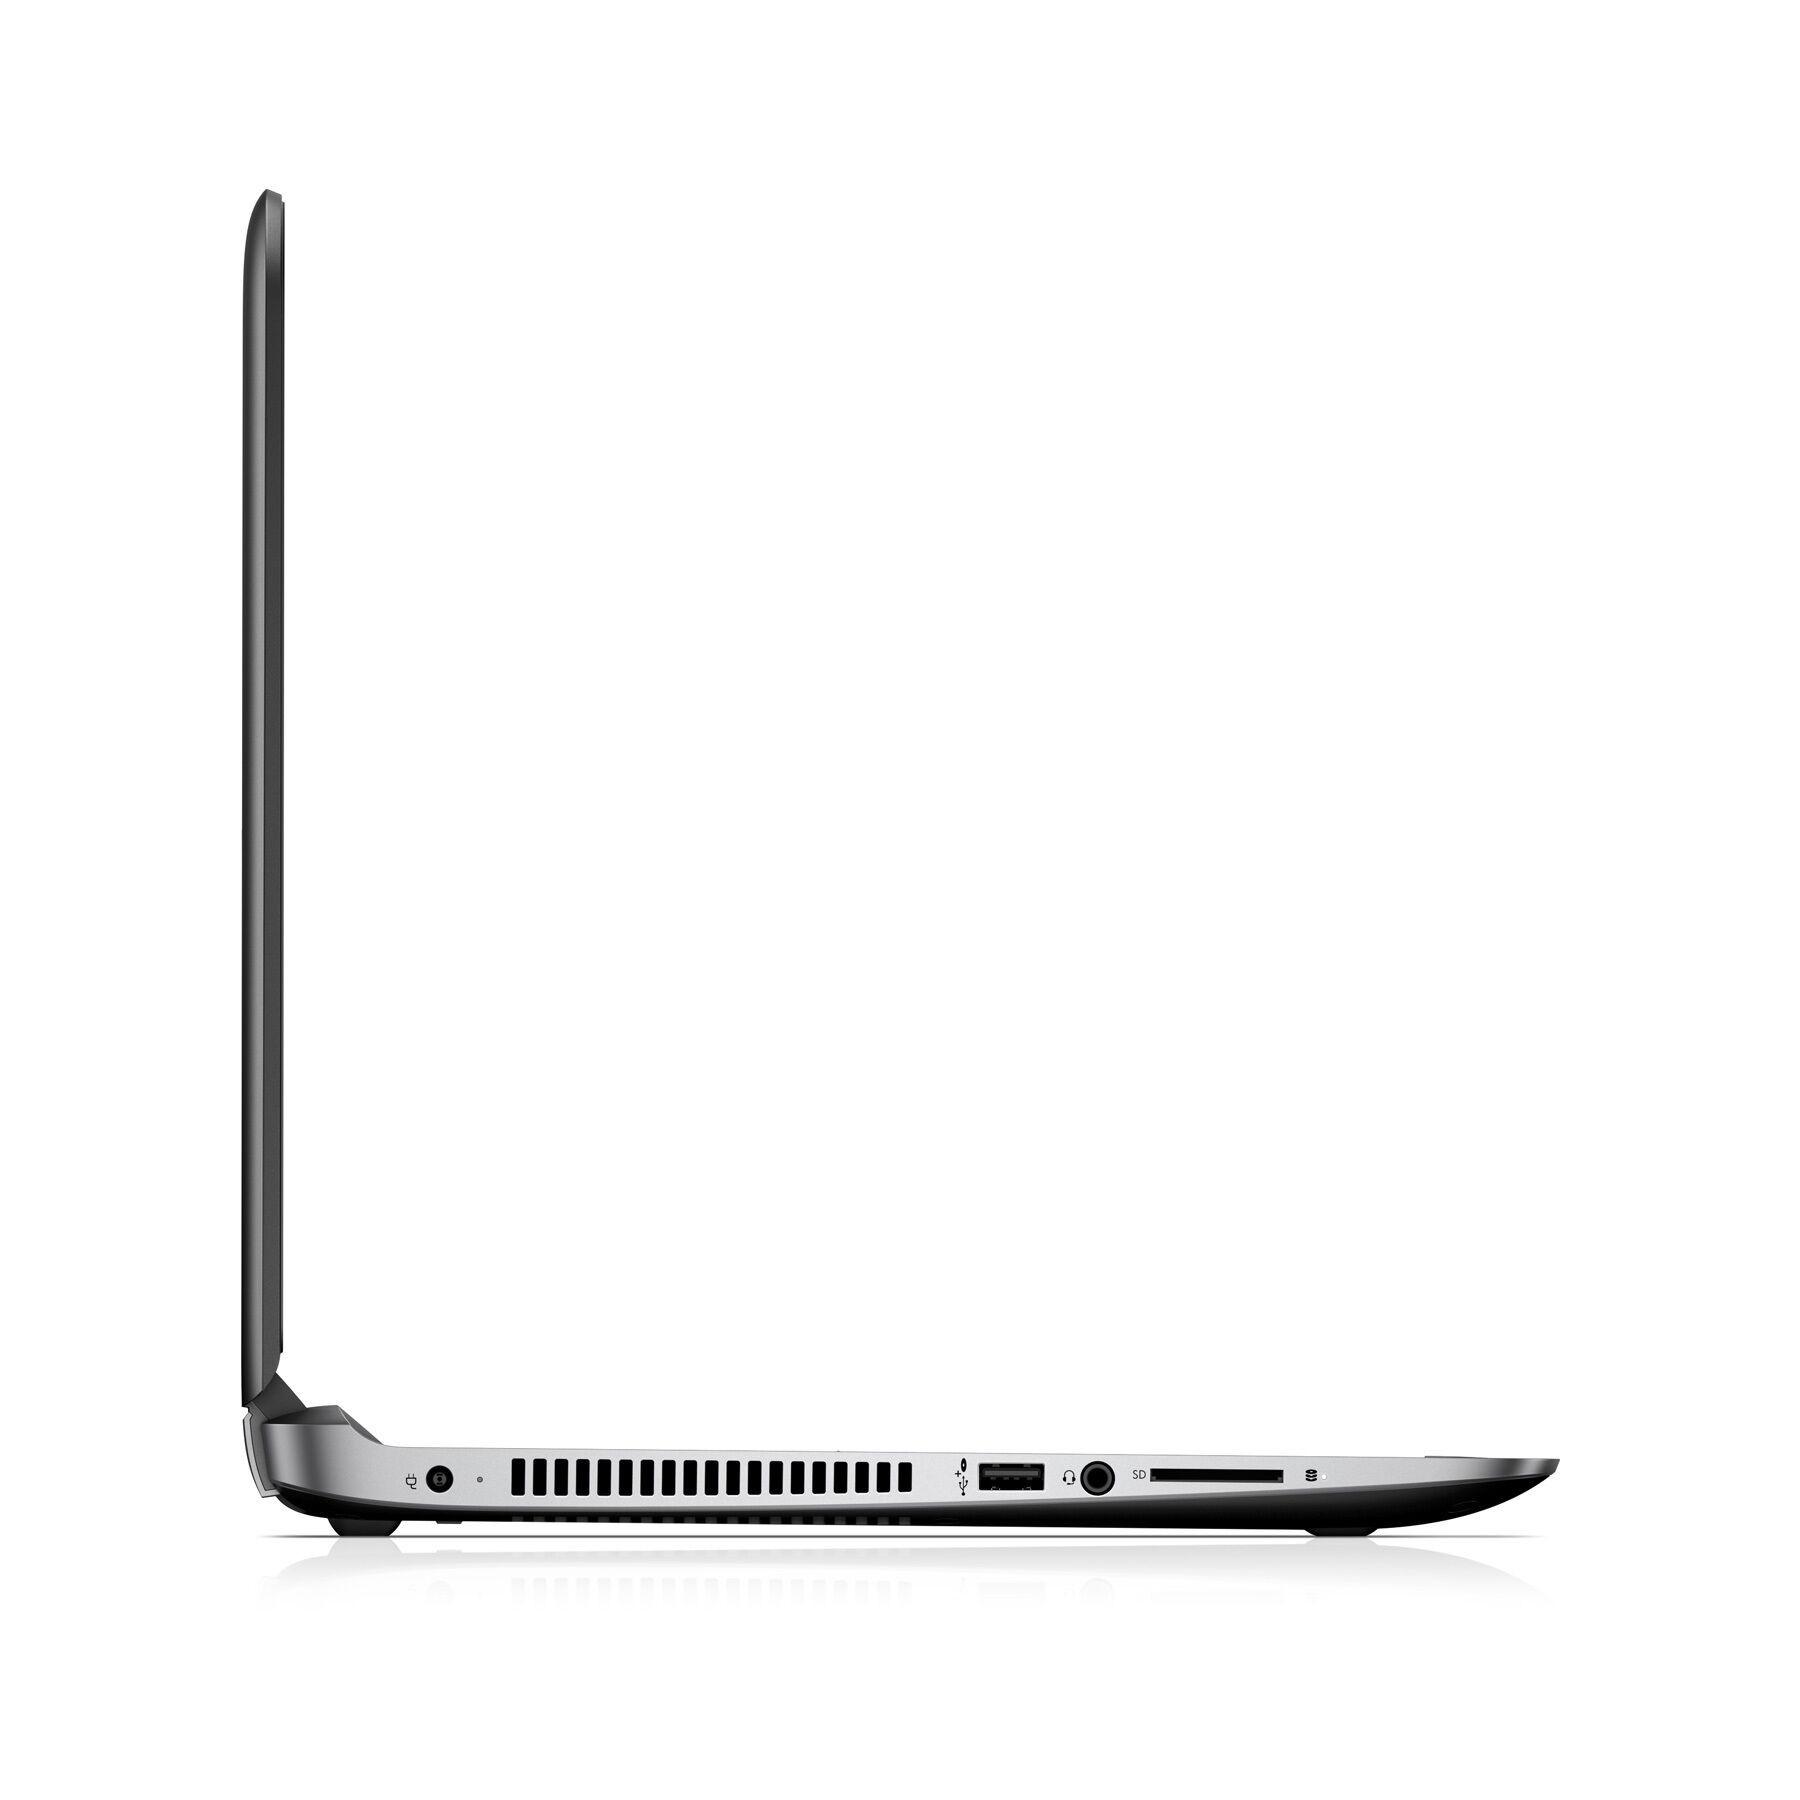 HP ProBook 440 G3 Intel Core i5-6300U 2.40GHz 8GB RAM 256GB SSD HD Win 10 Pro